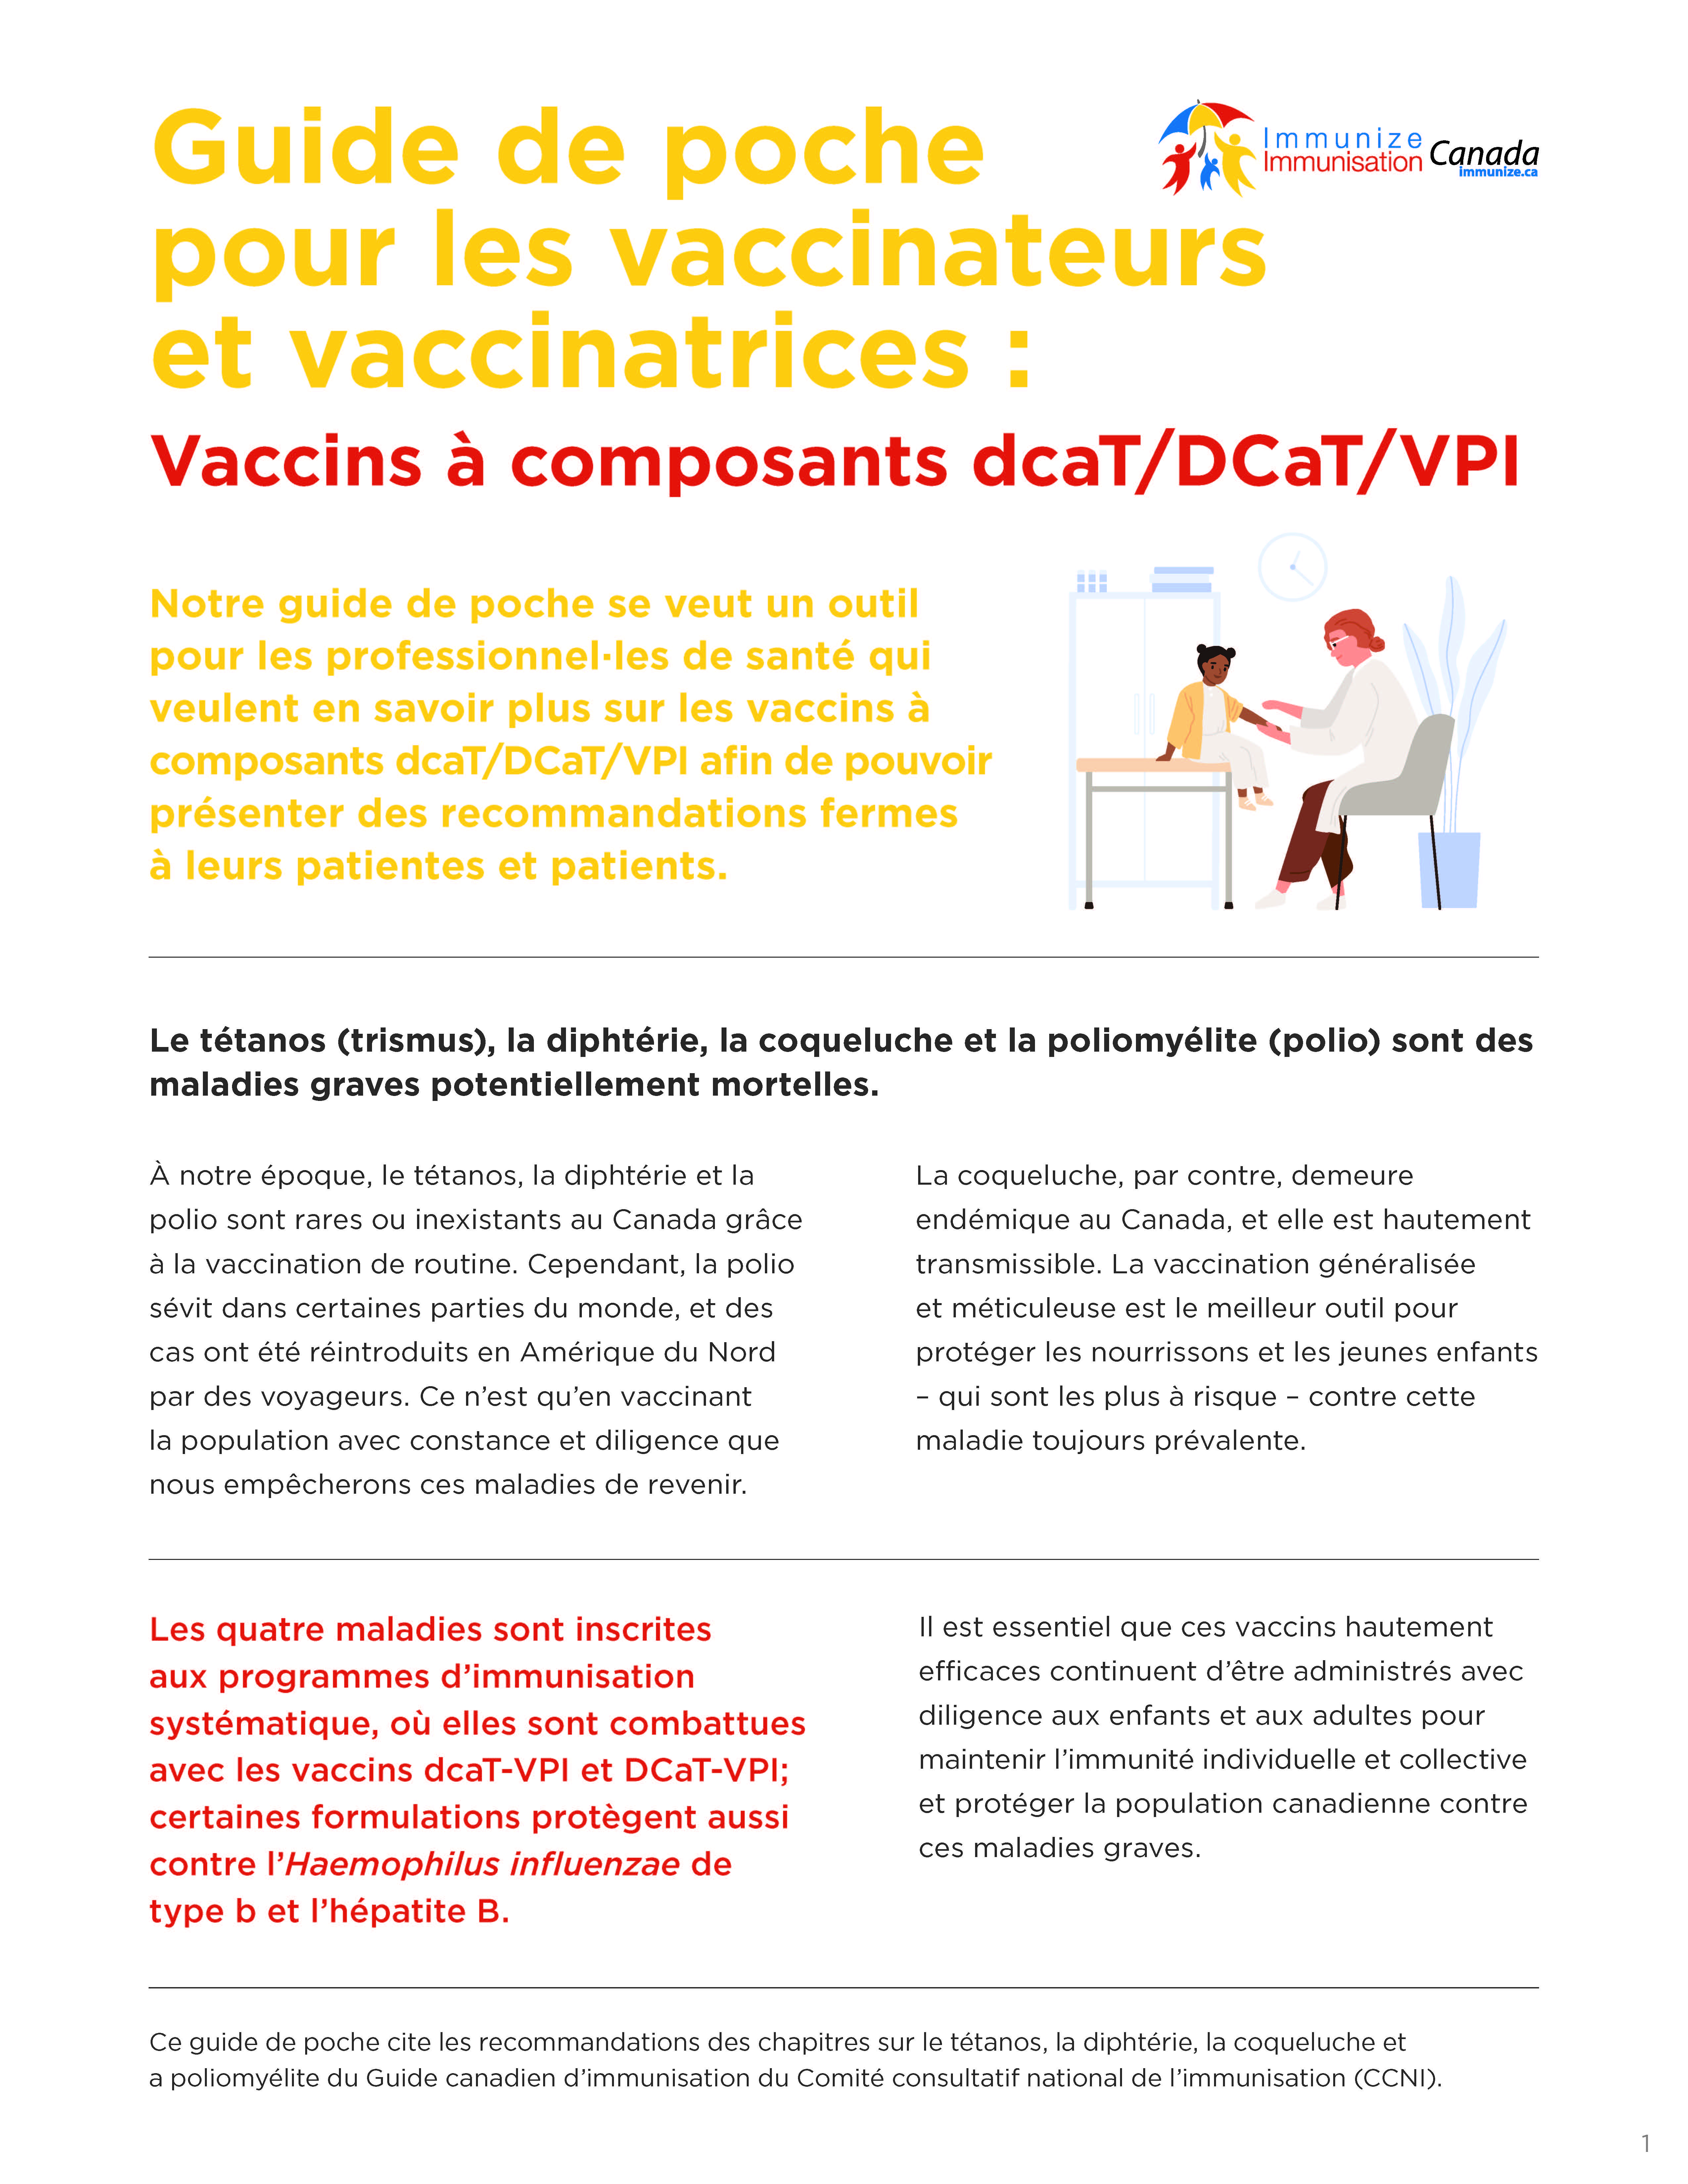 Guide de poche pour les vaccinateurs et vaccinatrices : Vaccins à composants dcaT/DCaT/VPI